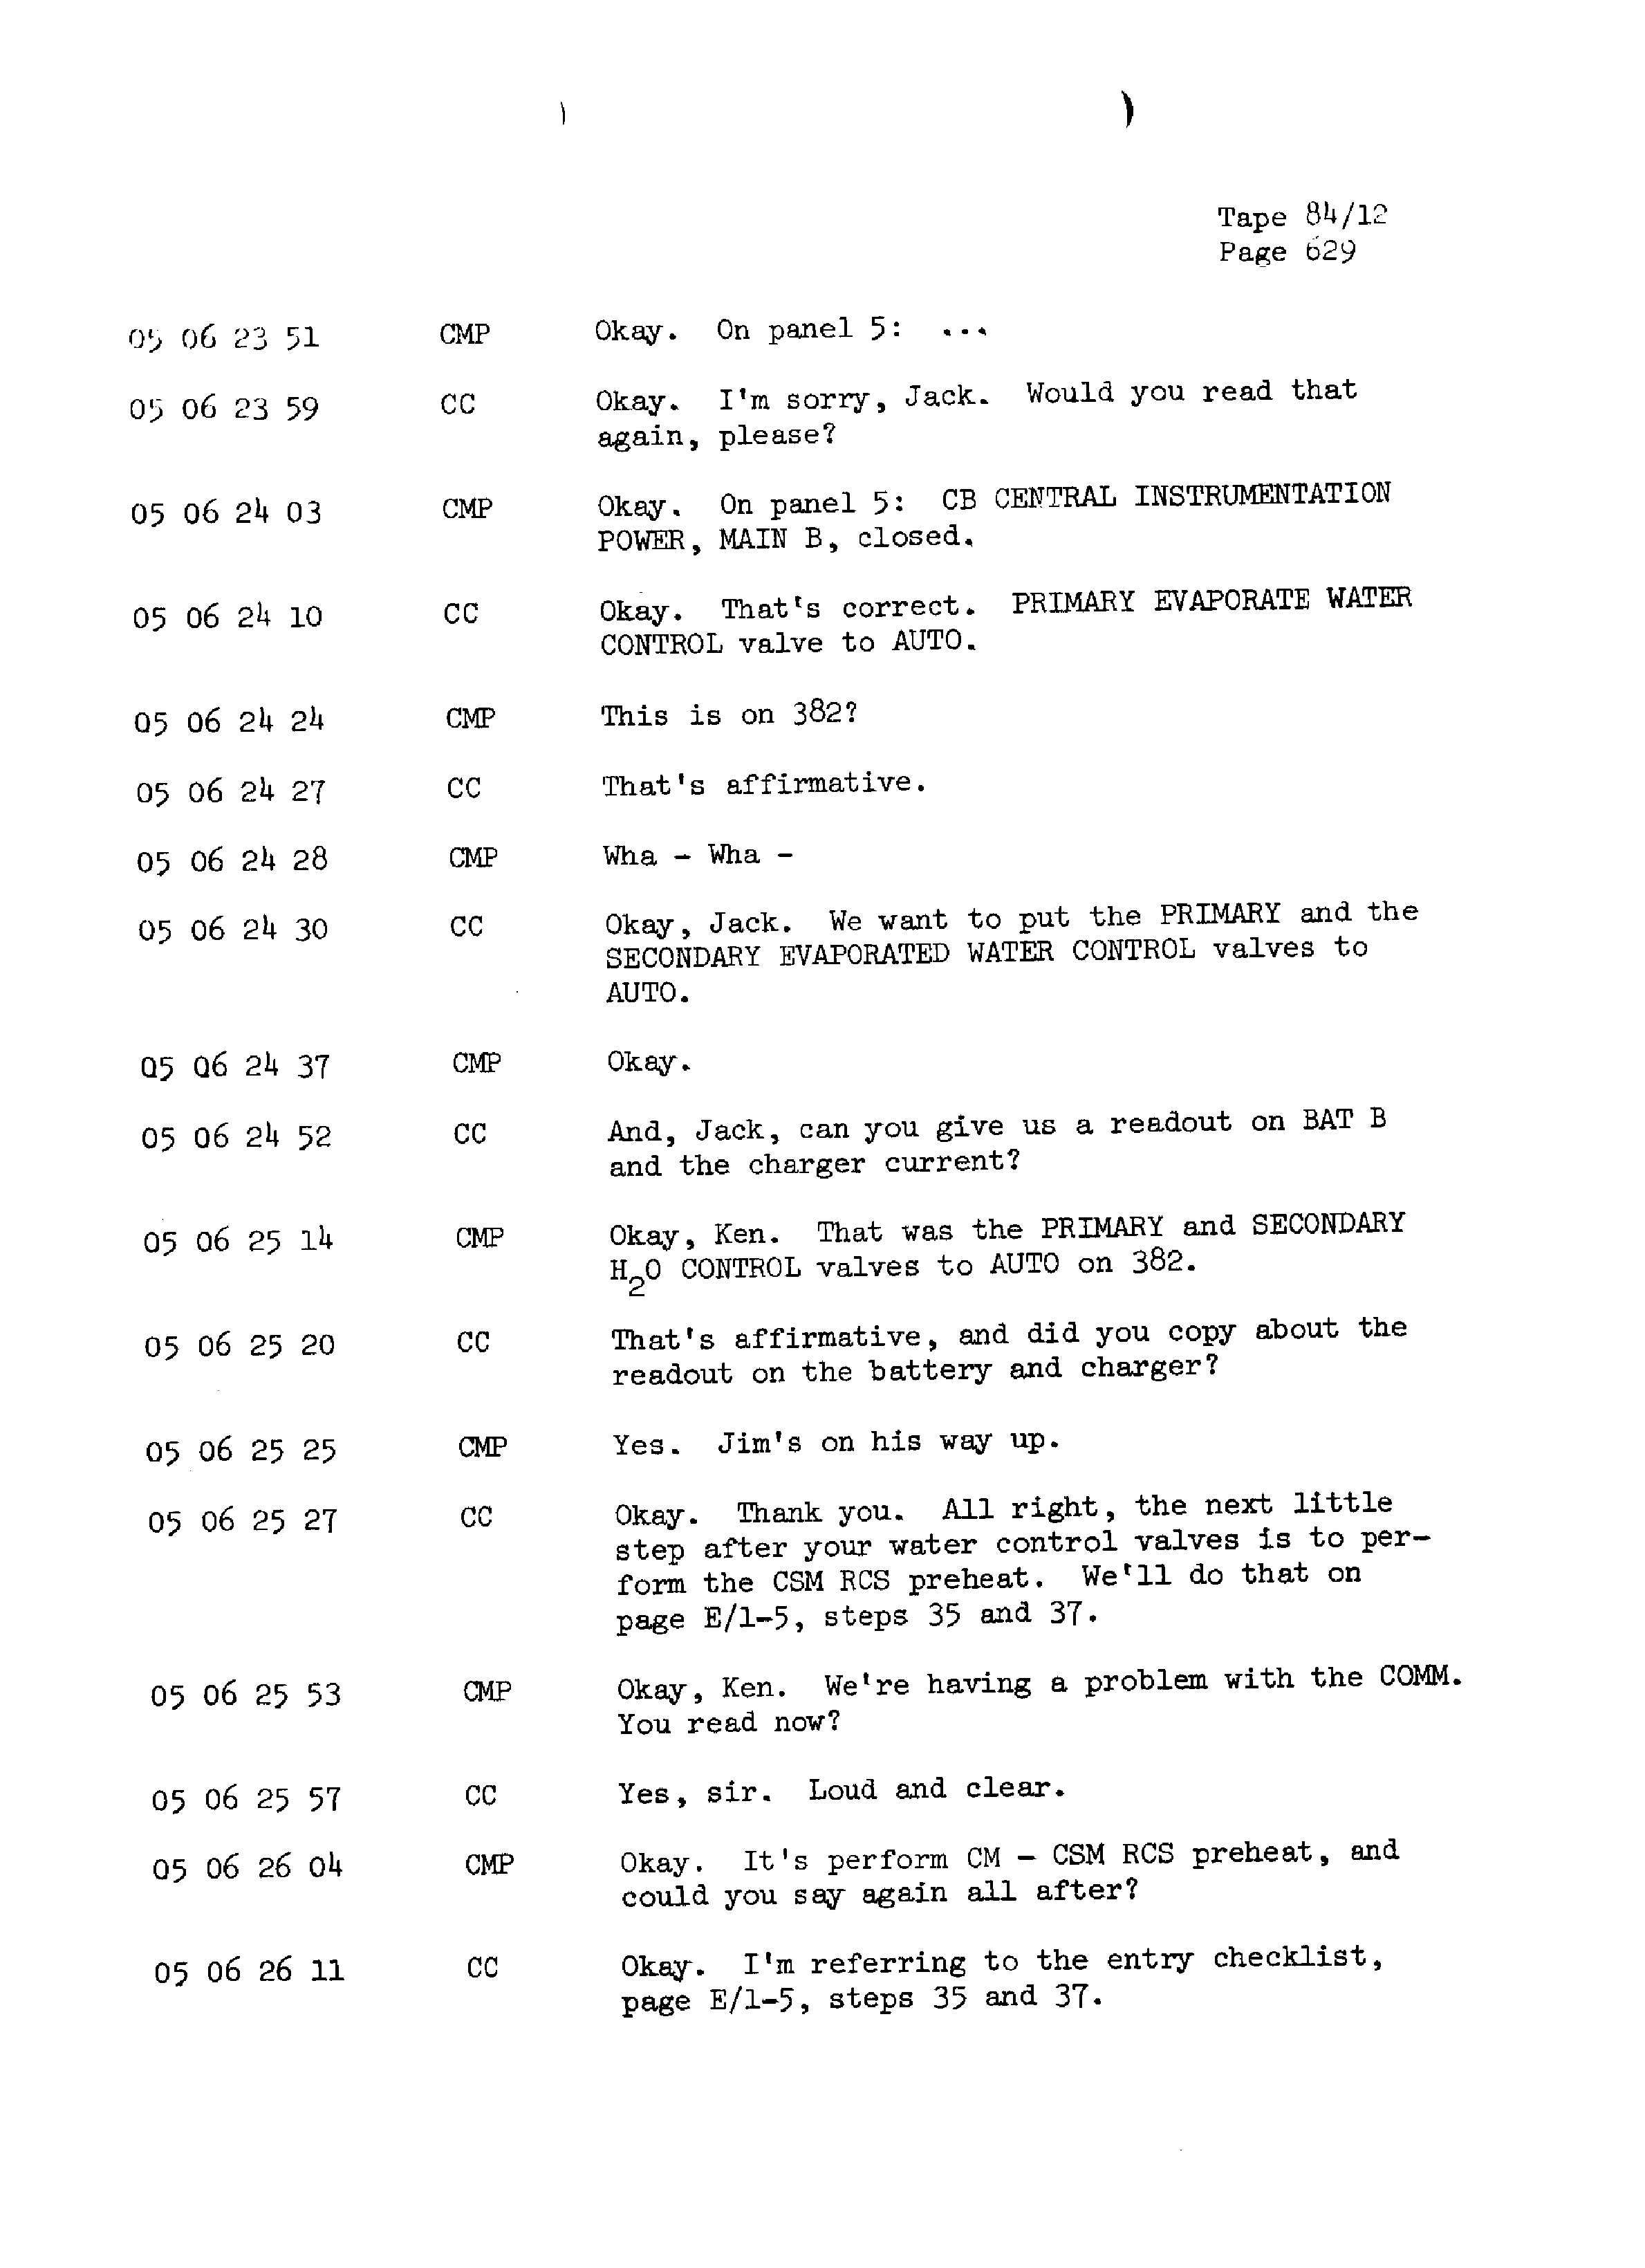 Page 636 of Apollo 13’s original transcript